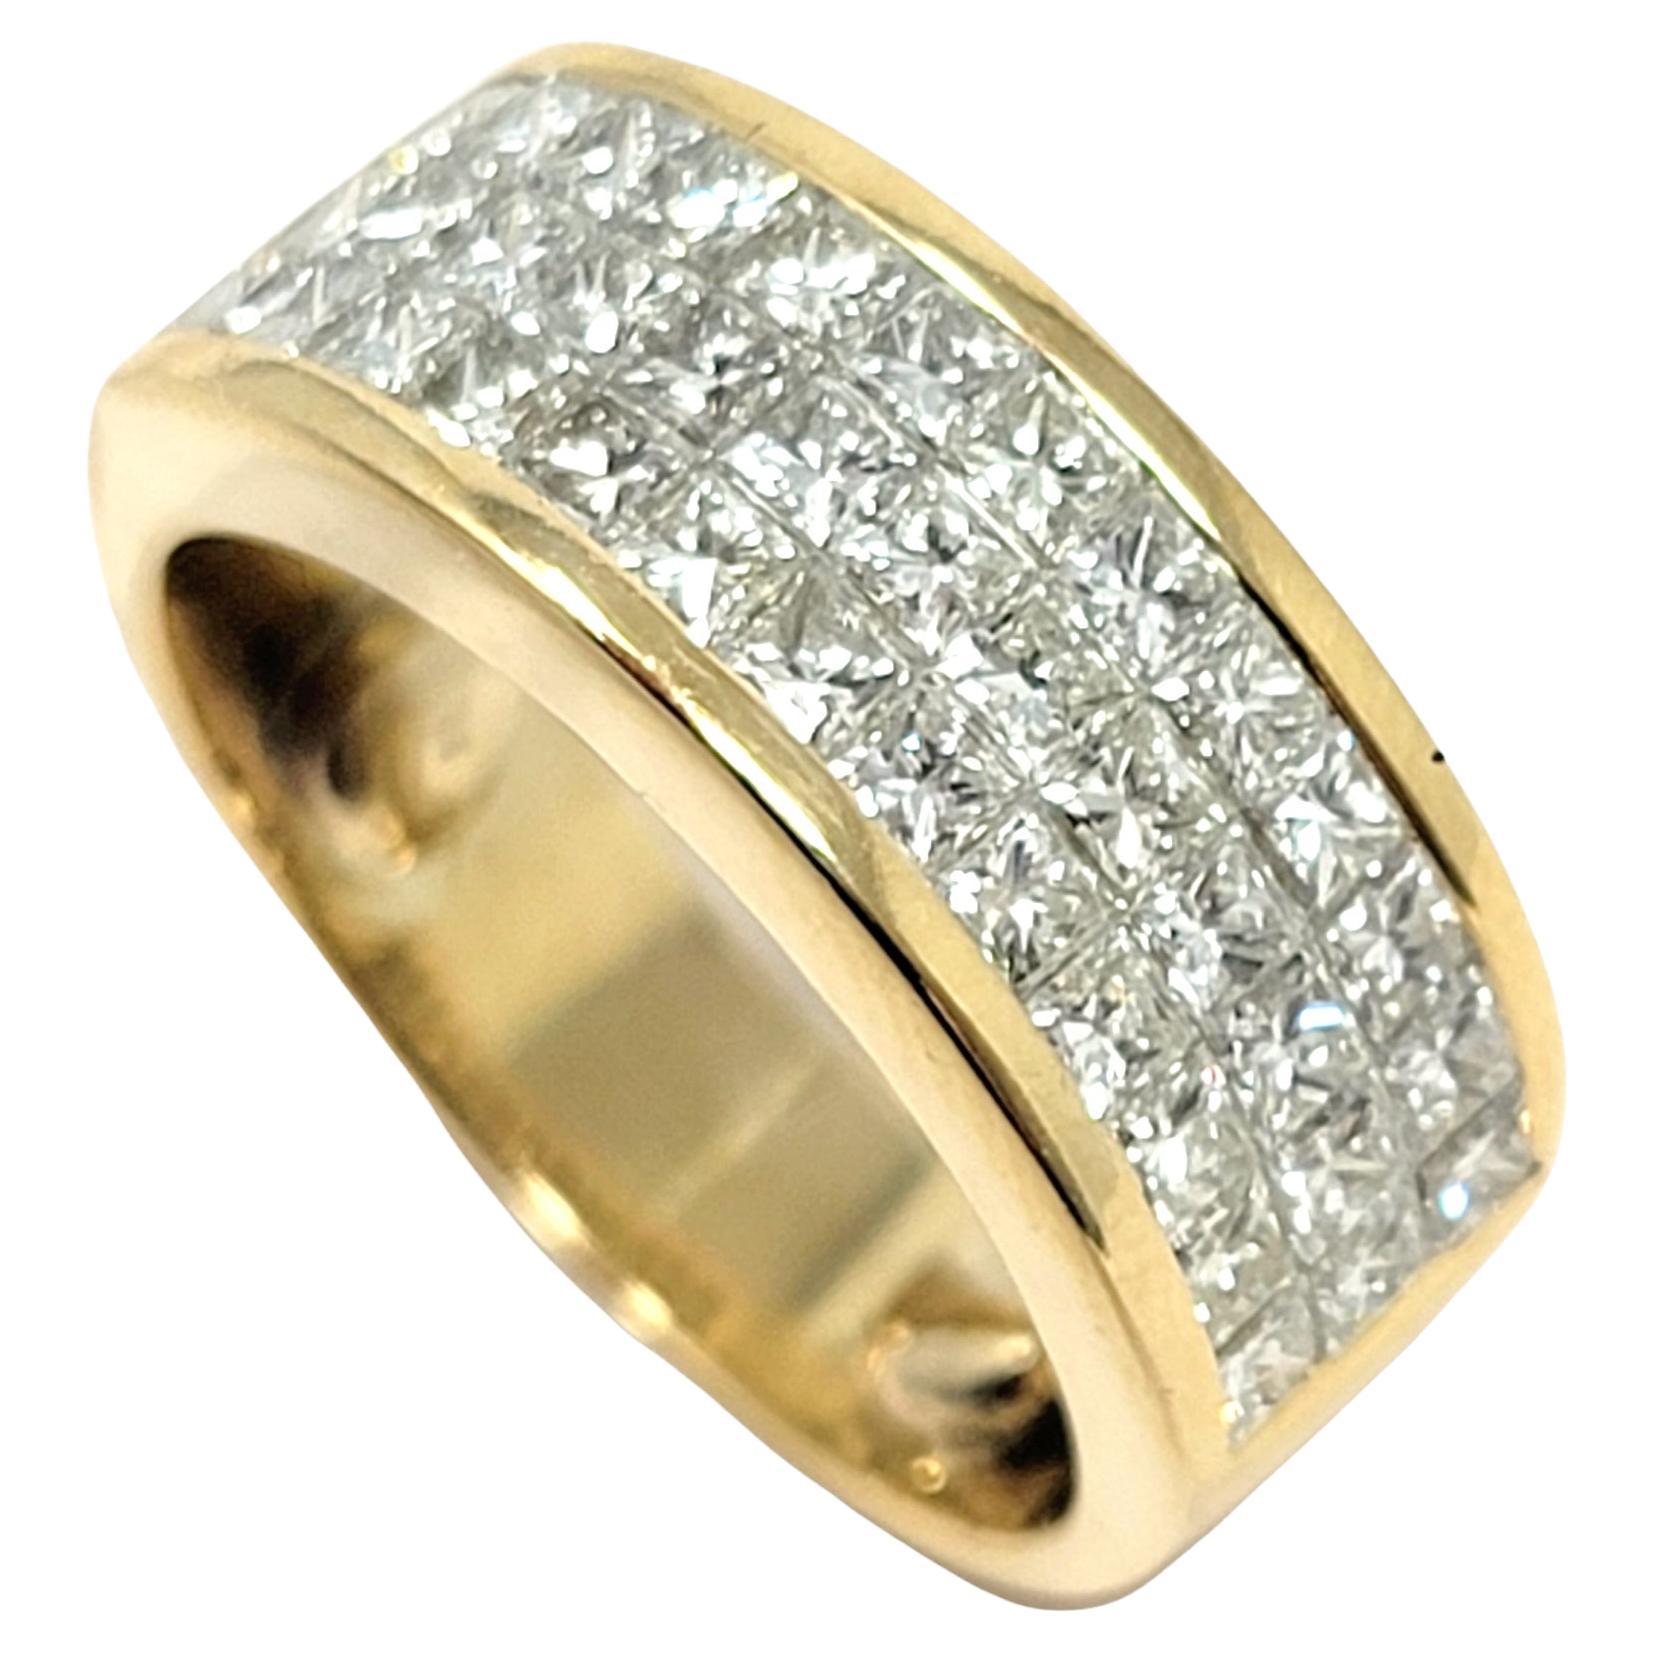 Princess Cut Invisible Set Three-Row Diamond Band Ring in 18 Karat Yellow Gold